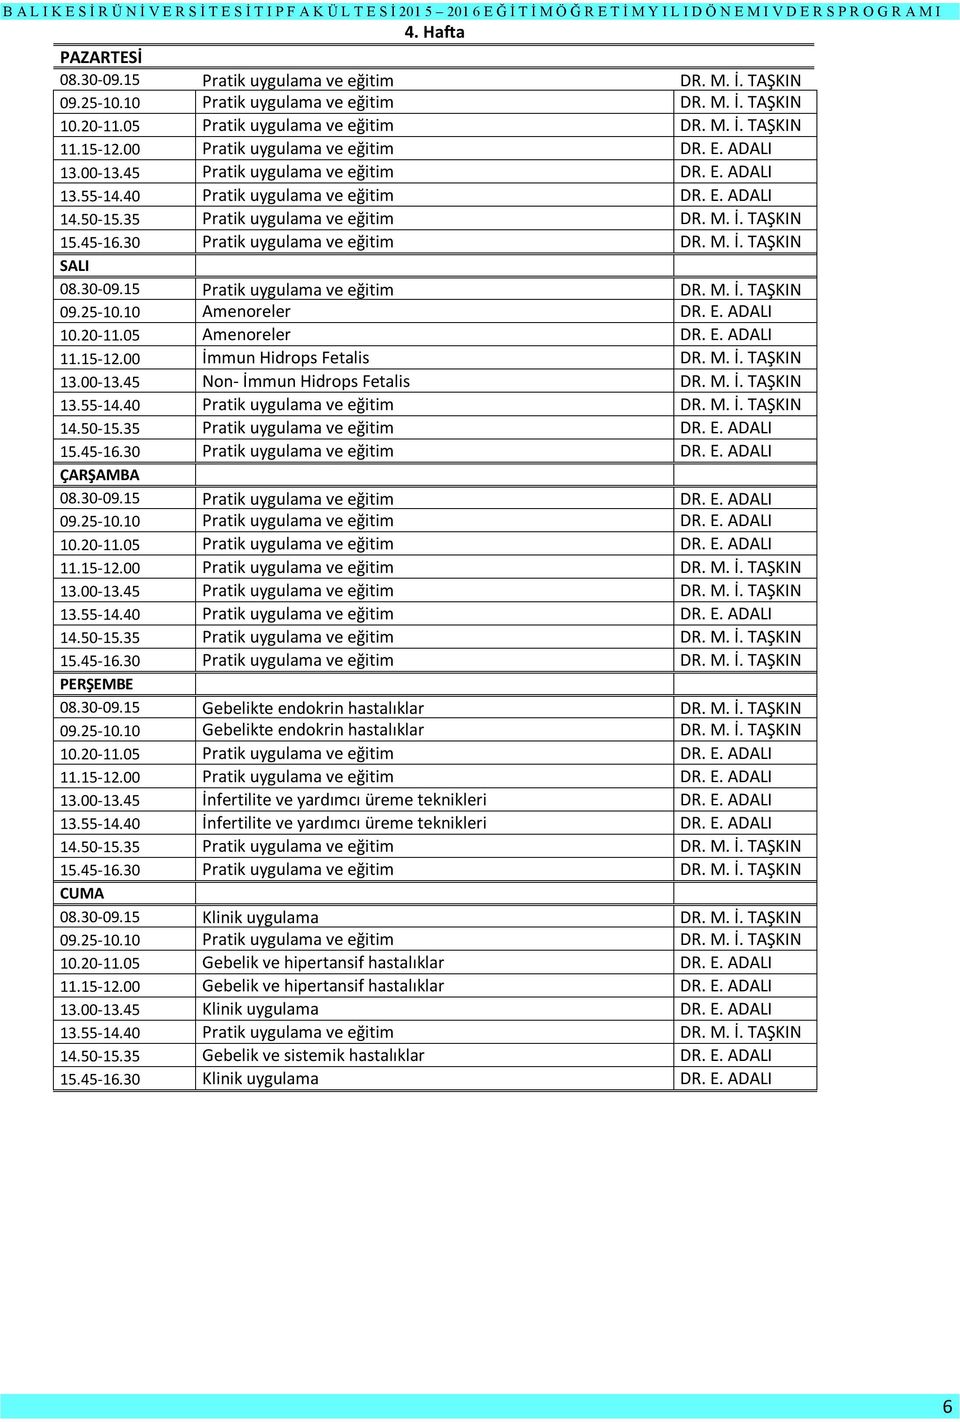 TAŞKIN 15.45-16.30 Pratik uygulama ve eğitim DR. M. İ. TAŞKIN 08.30-09.15 Pratik uygulama ve eğitim DR. M. İ. TAŞKIN 09.25-10.10 Amenoreler DR. E. ADALI 10.20-11.05 Amenoreler DR. E. ADALI 11.15-12.